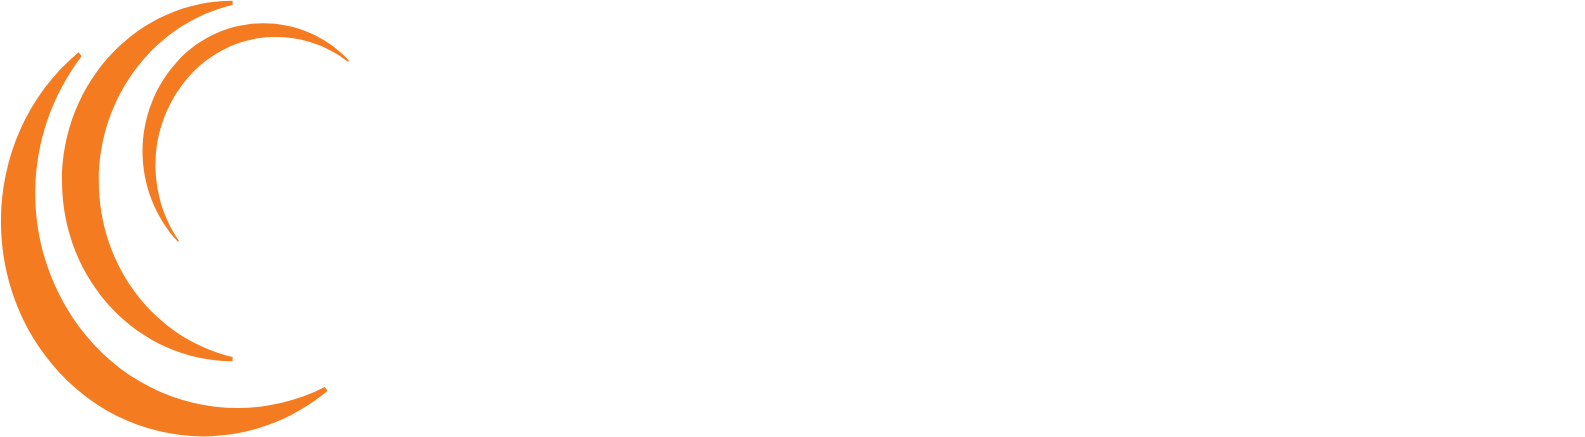 Soligenix Logo groß für dunkle Hintergründe (transparentes PNG)